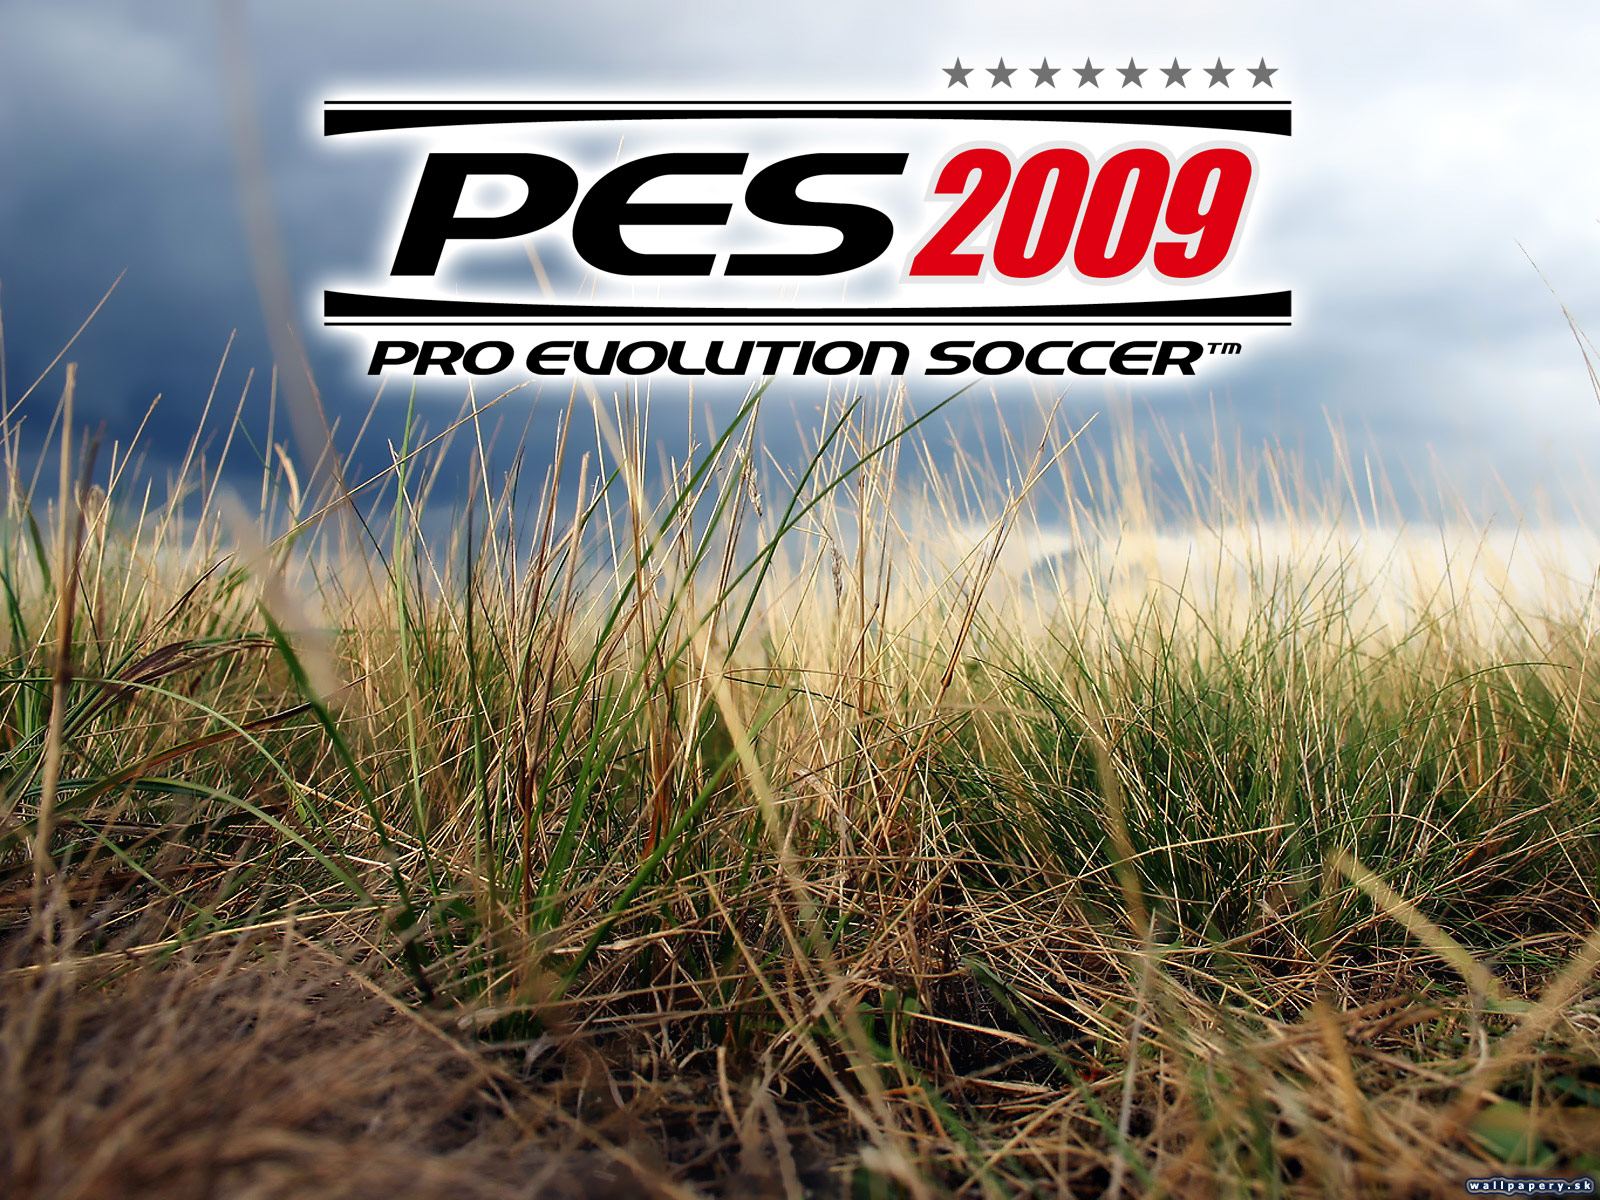 Pro Evolution Soccer 2009 - wallpaper 3